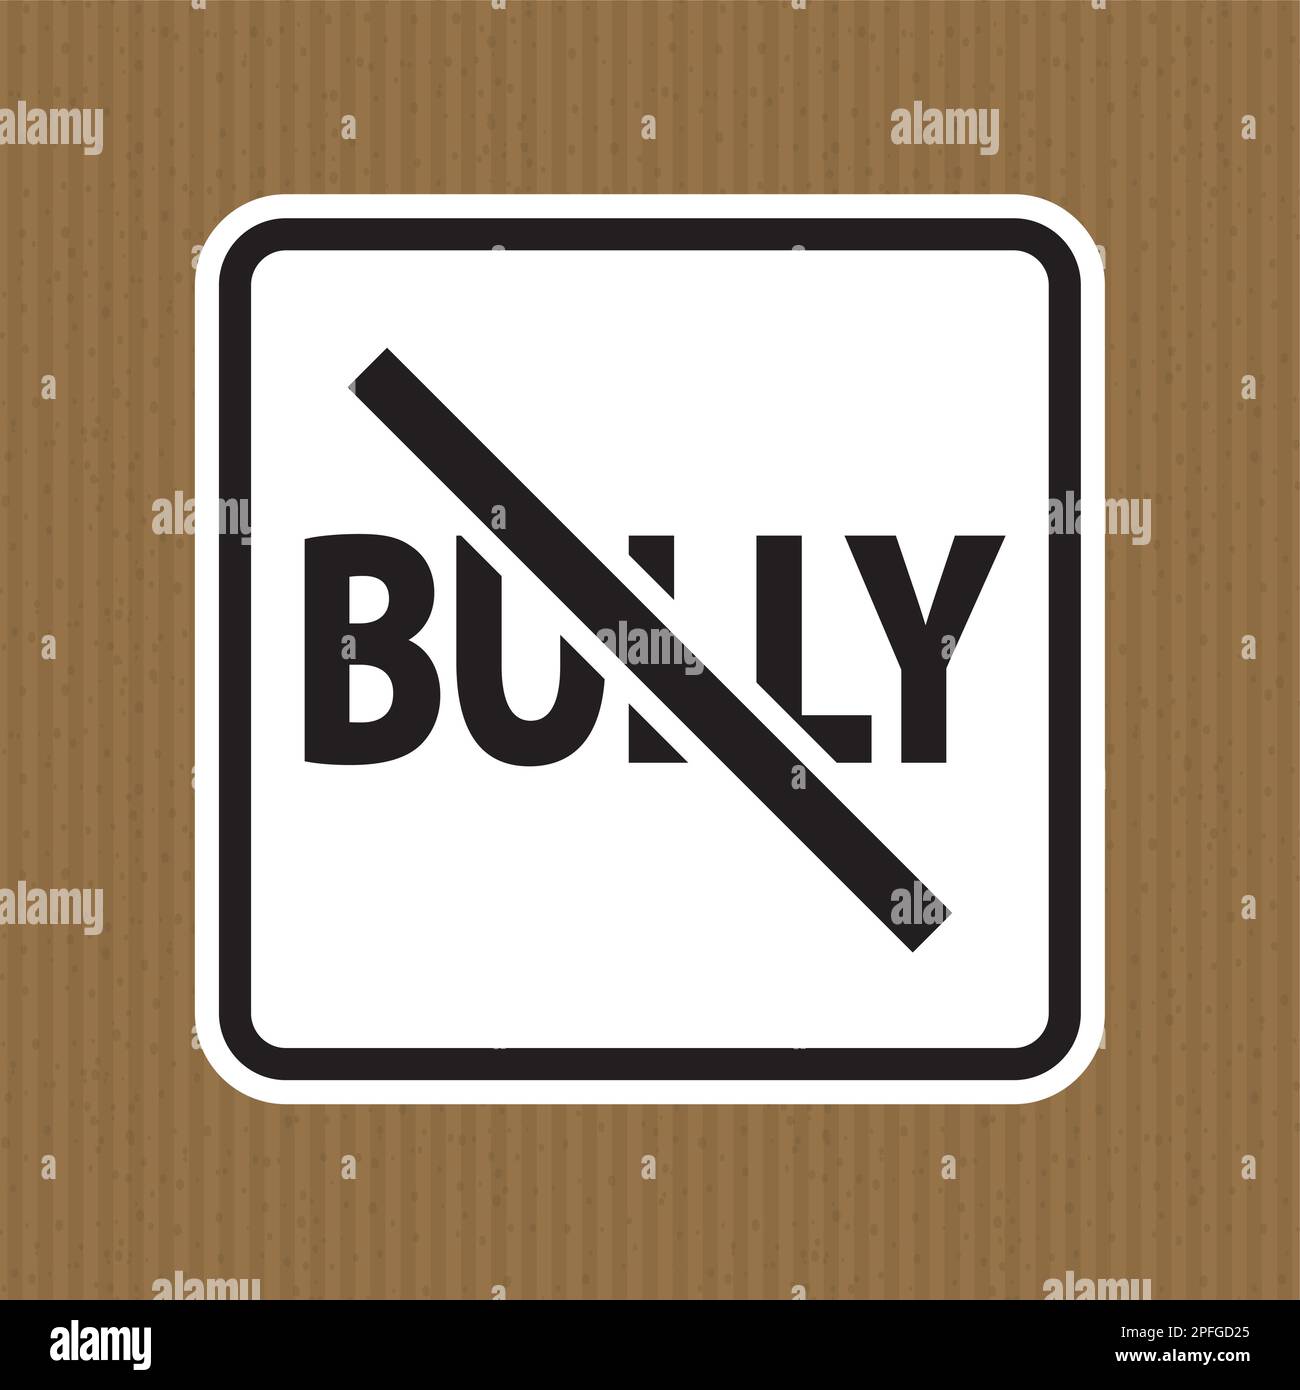 Bullying Sign, No Bully Stock Vector